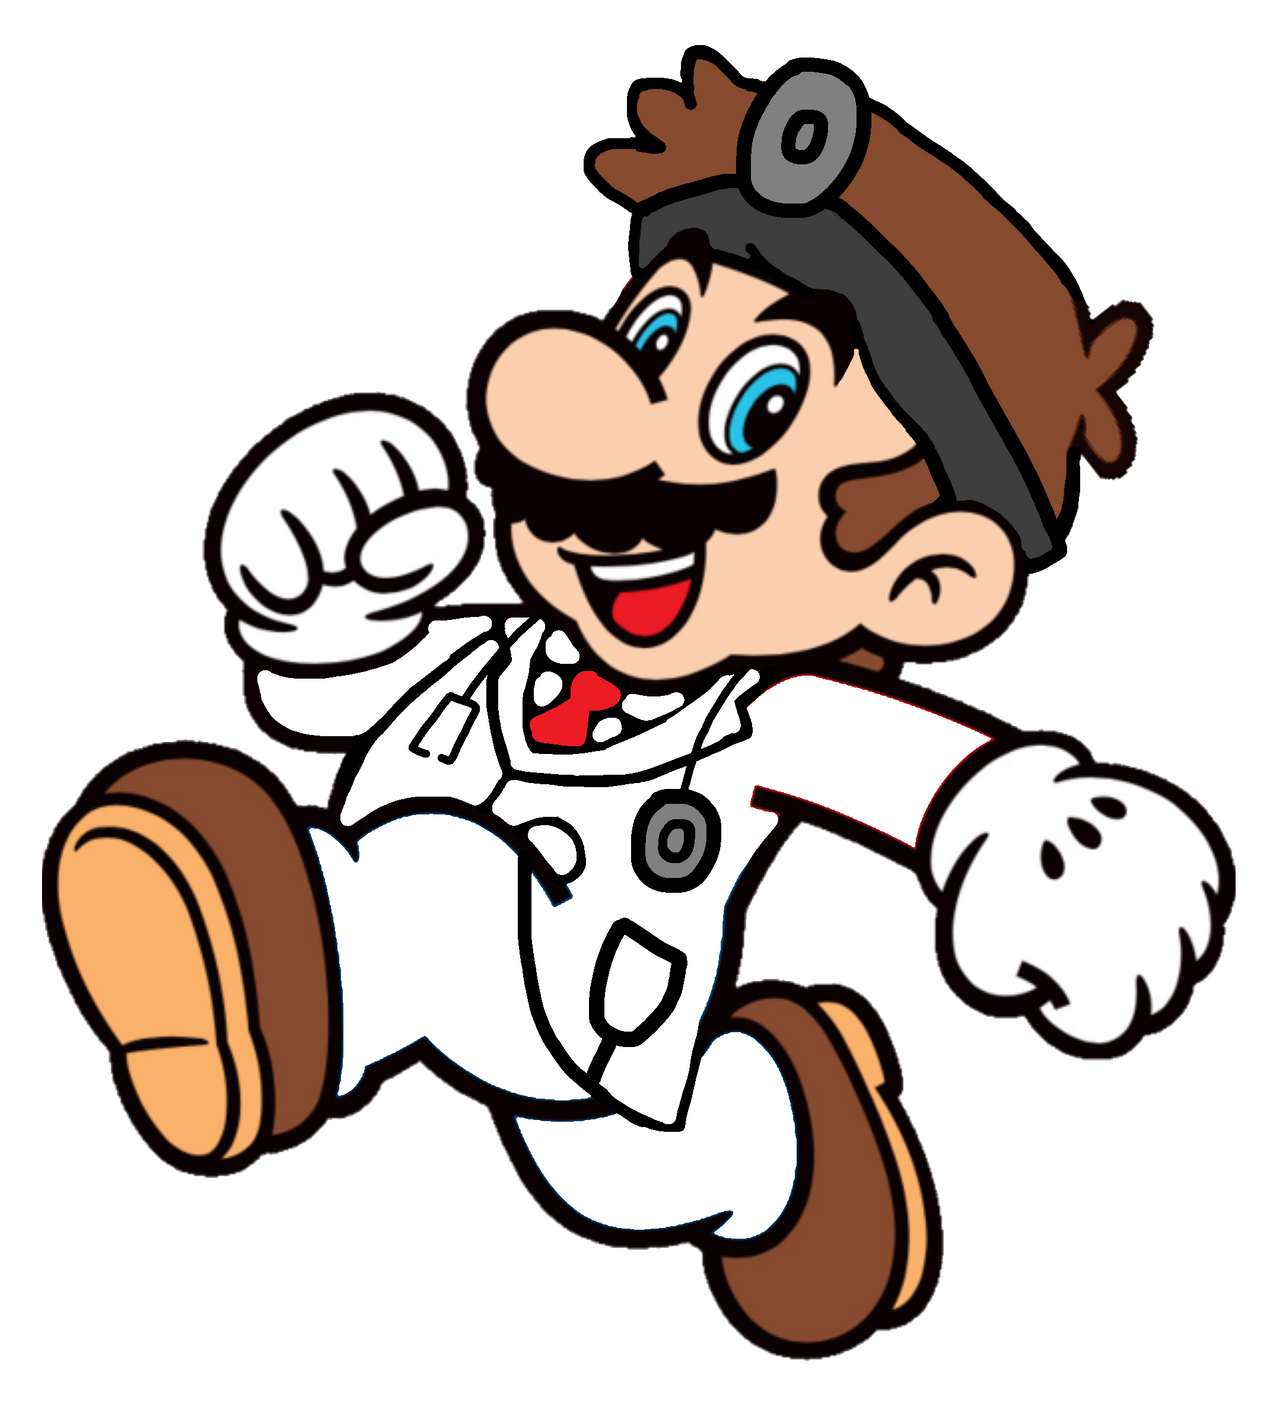 rechazo Acompañar marzo Super Mario: Dr. Mario 2D by Joshuat1306 on DeviantArt